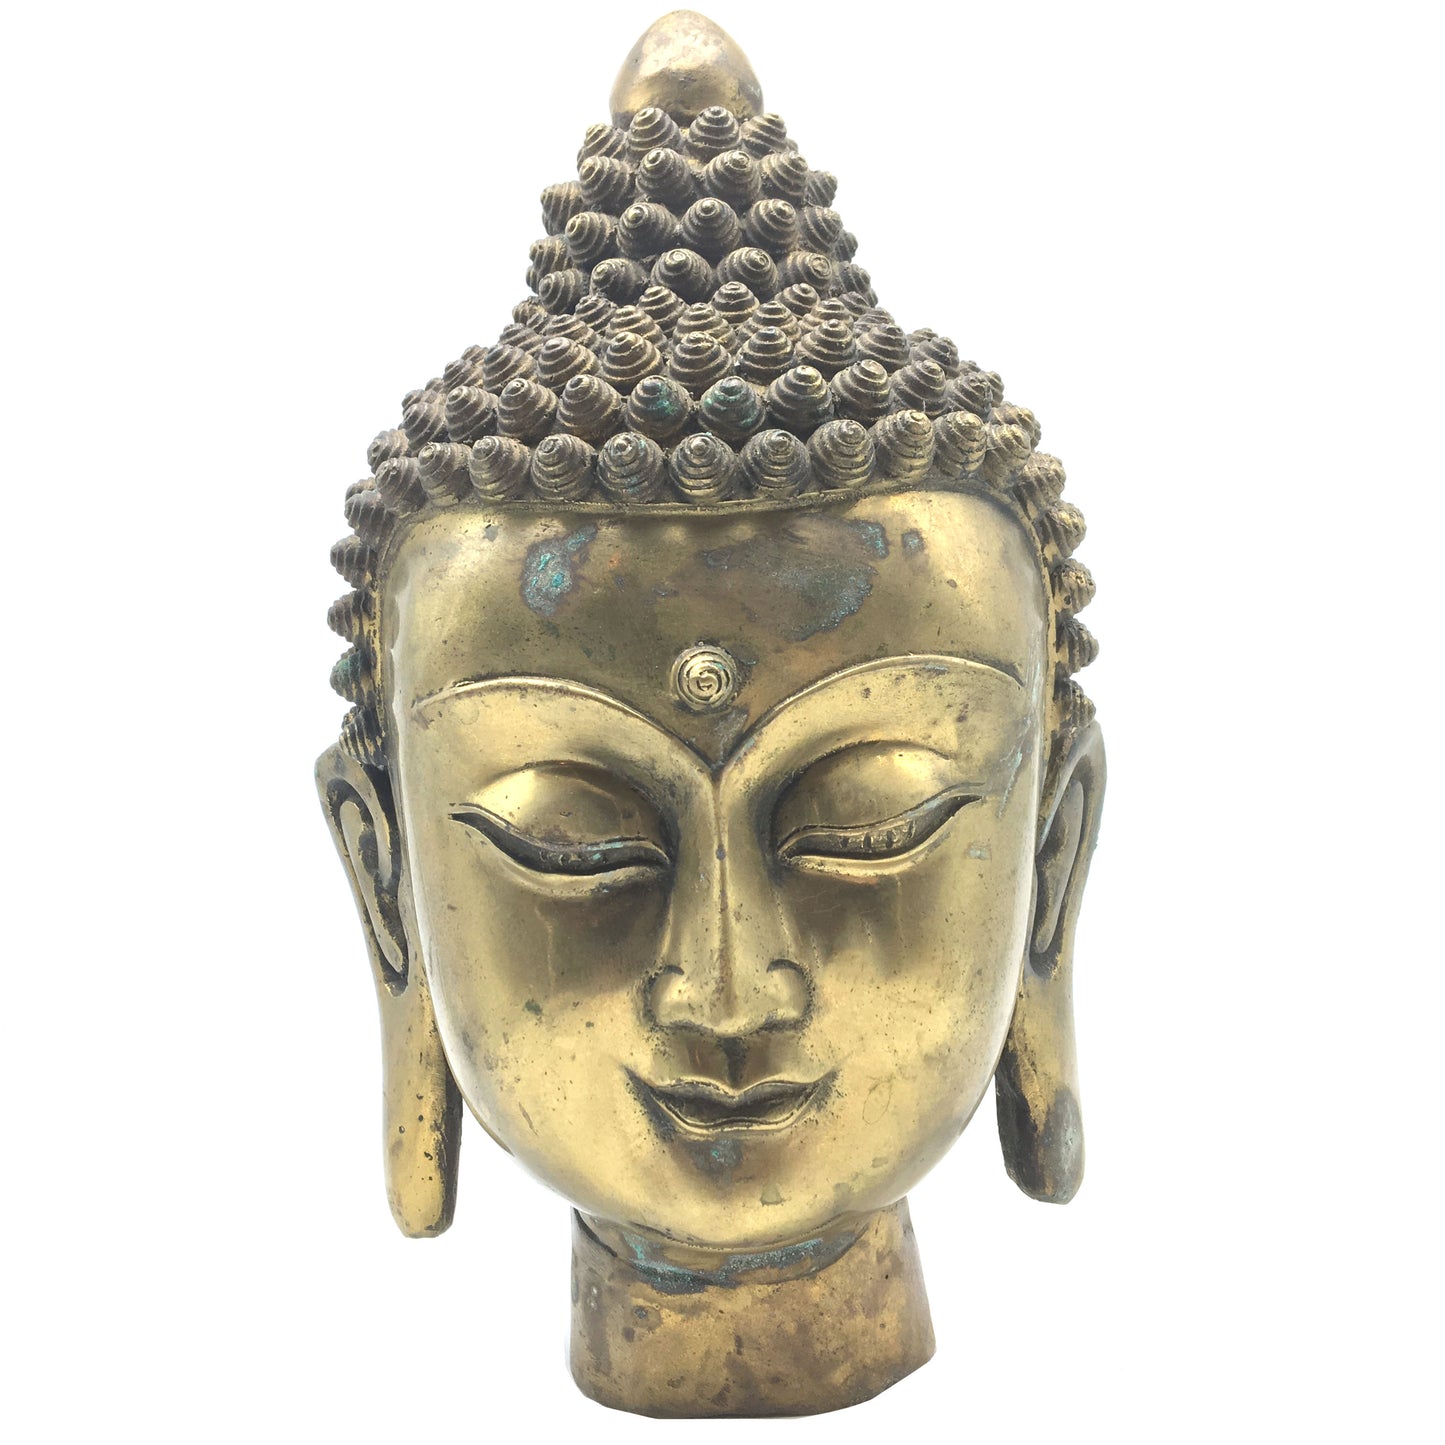 Amazing Brass ShakyaMuni Buddha Head Buddhism Sculpture Statue -Handcrafted